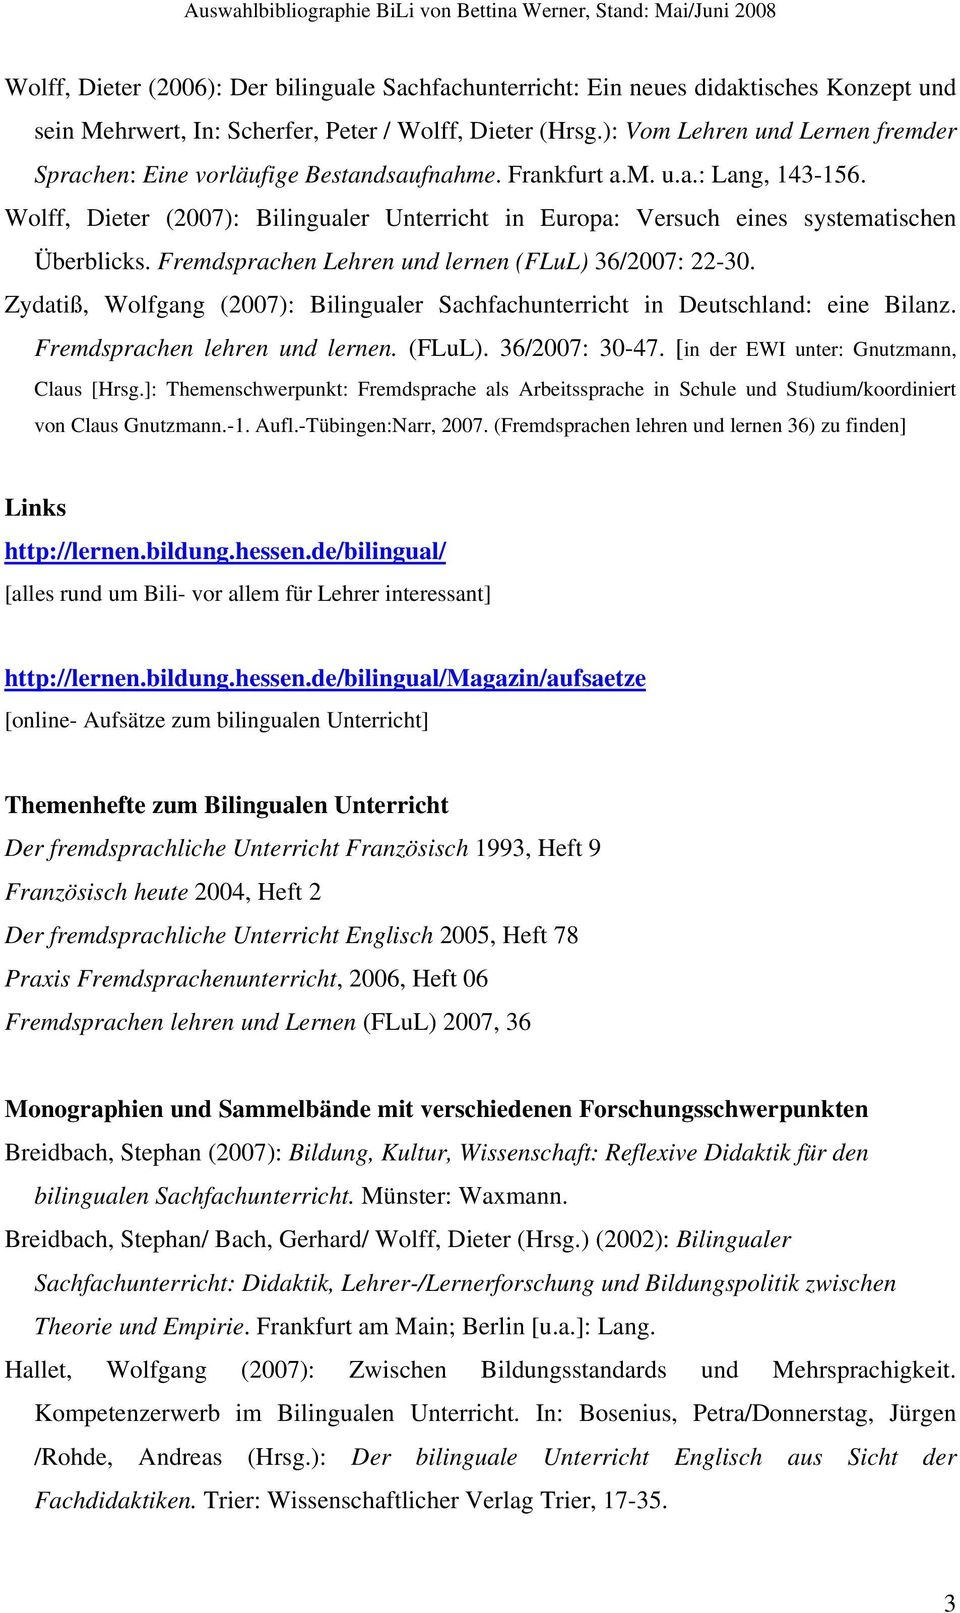 Wolff, Dieter (2007): Bilingualer Unterricht in Europa: Versuch eines systematischen Überblicks. Fremdsprachen Lehren und lernen (FLuL) 36/2007: 22-30.